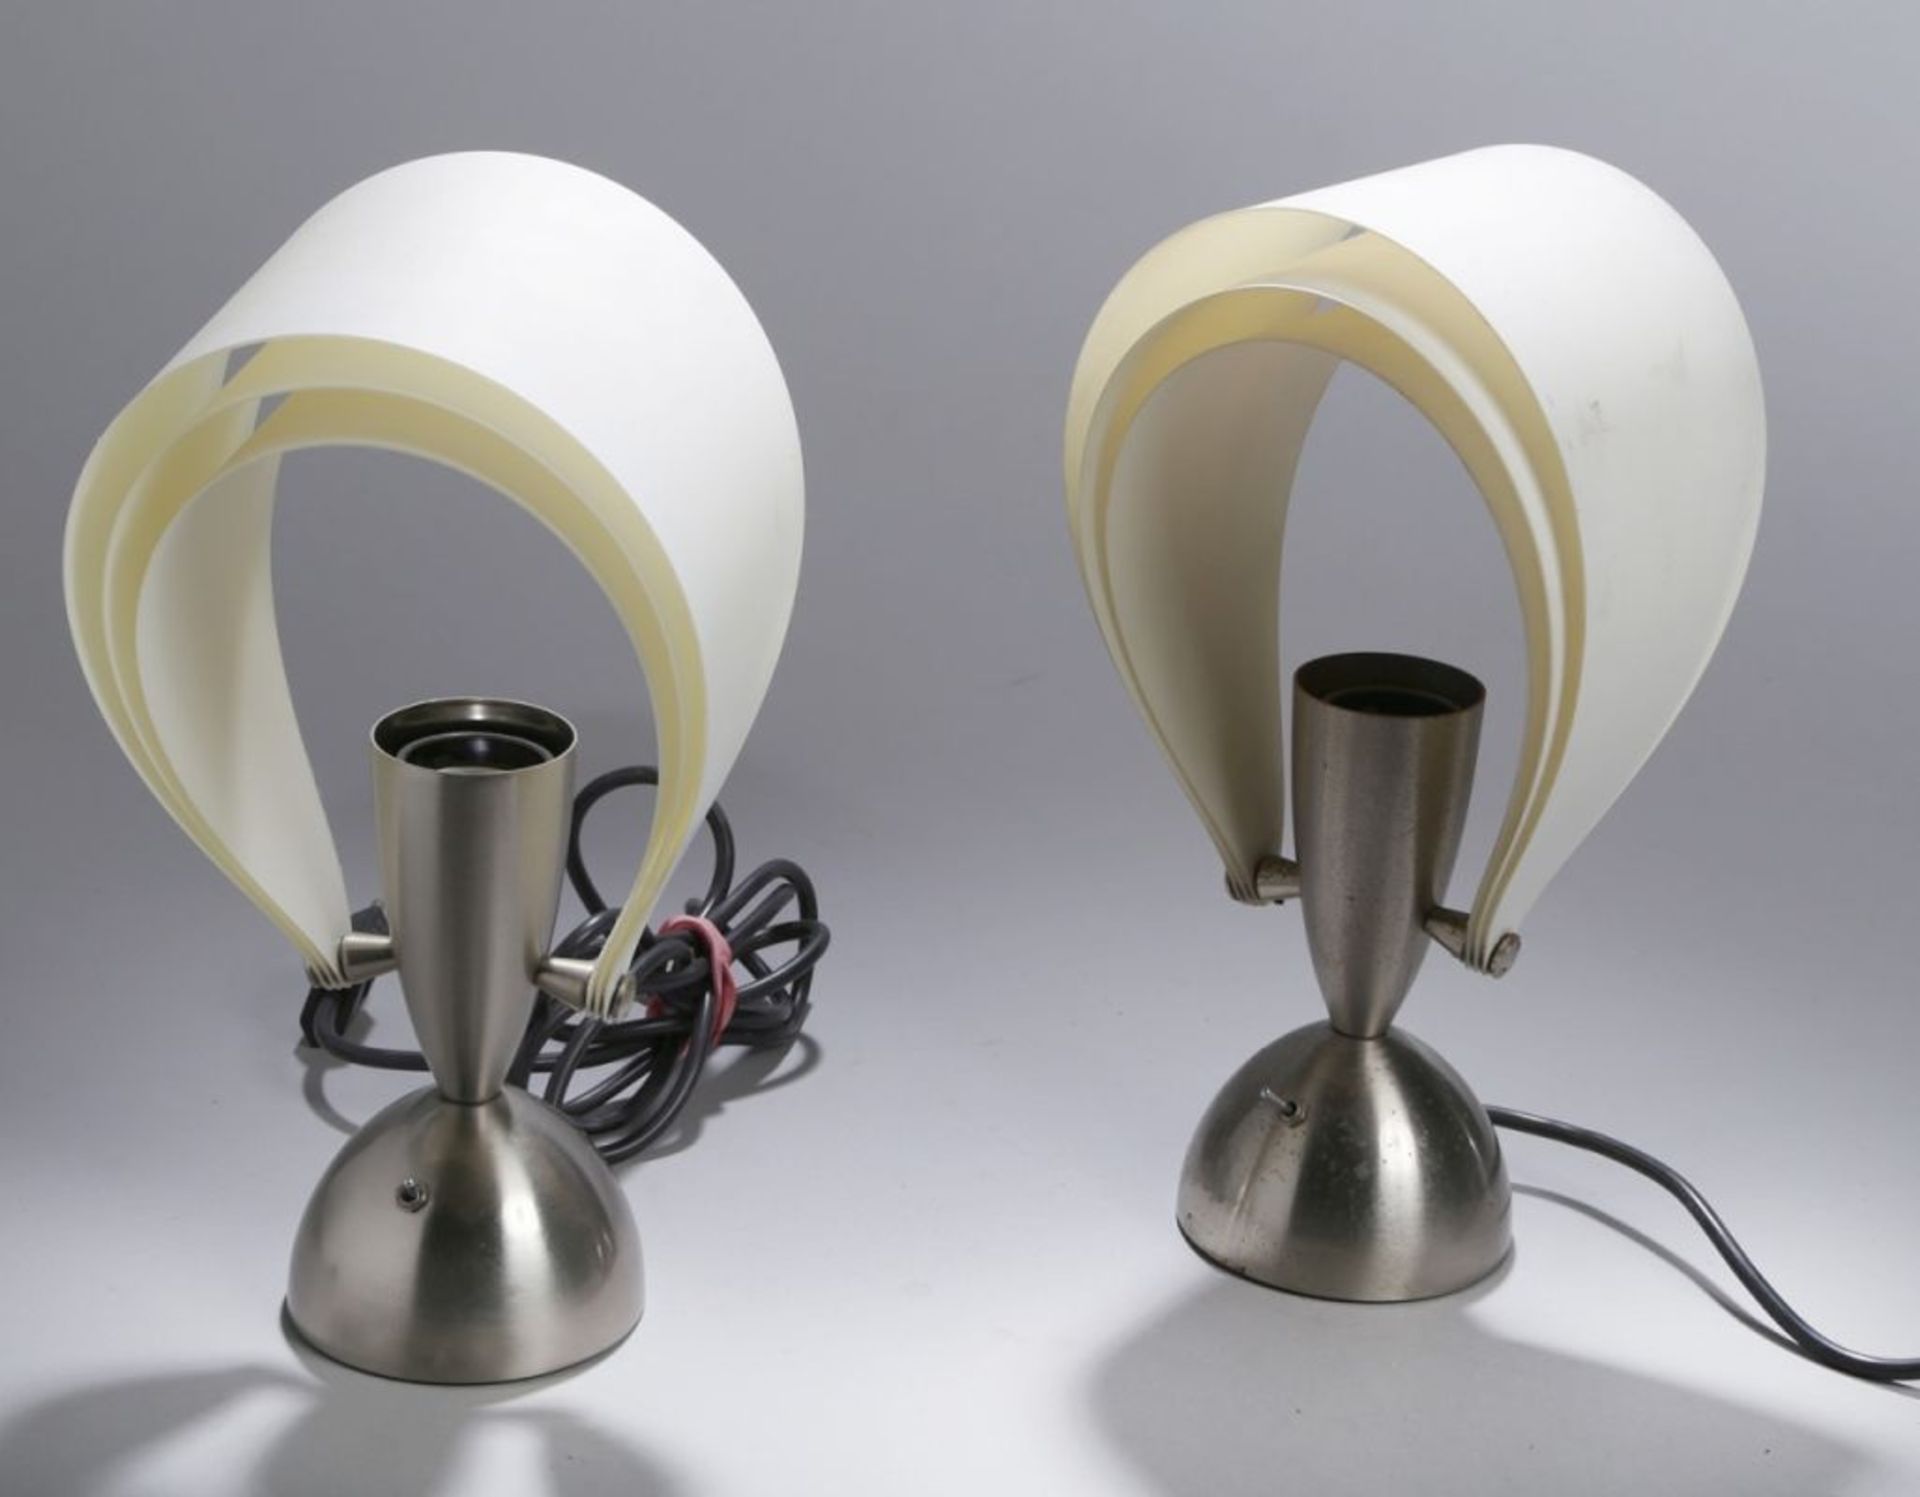 Ein Paar Tischlampen, "Soirée", Oluce, Italien, 70er Jahre, Metallfuß, beweglichePlastikfächer als